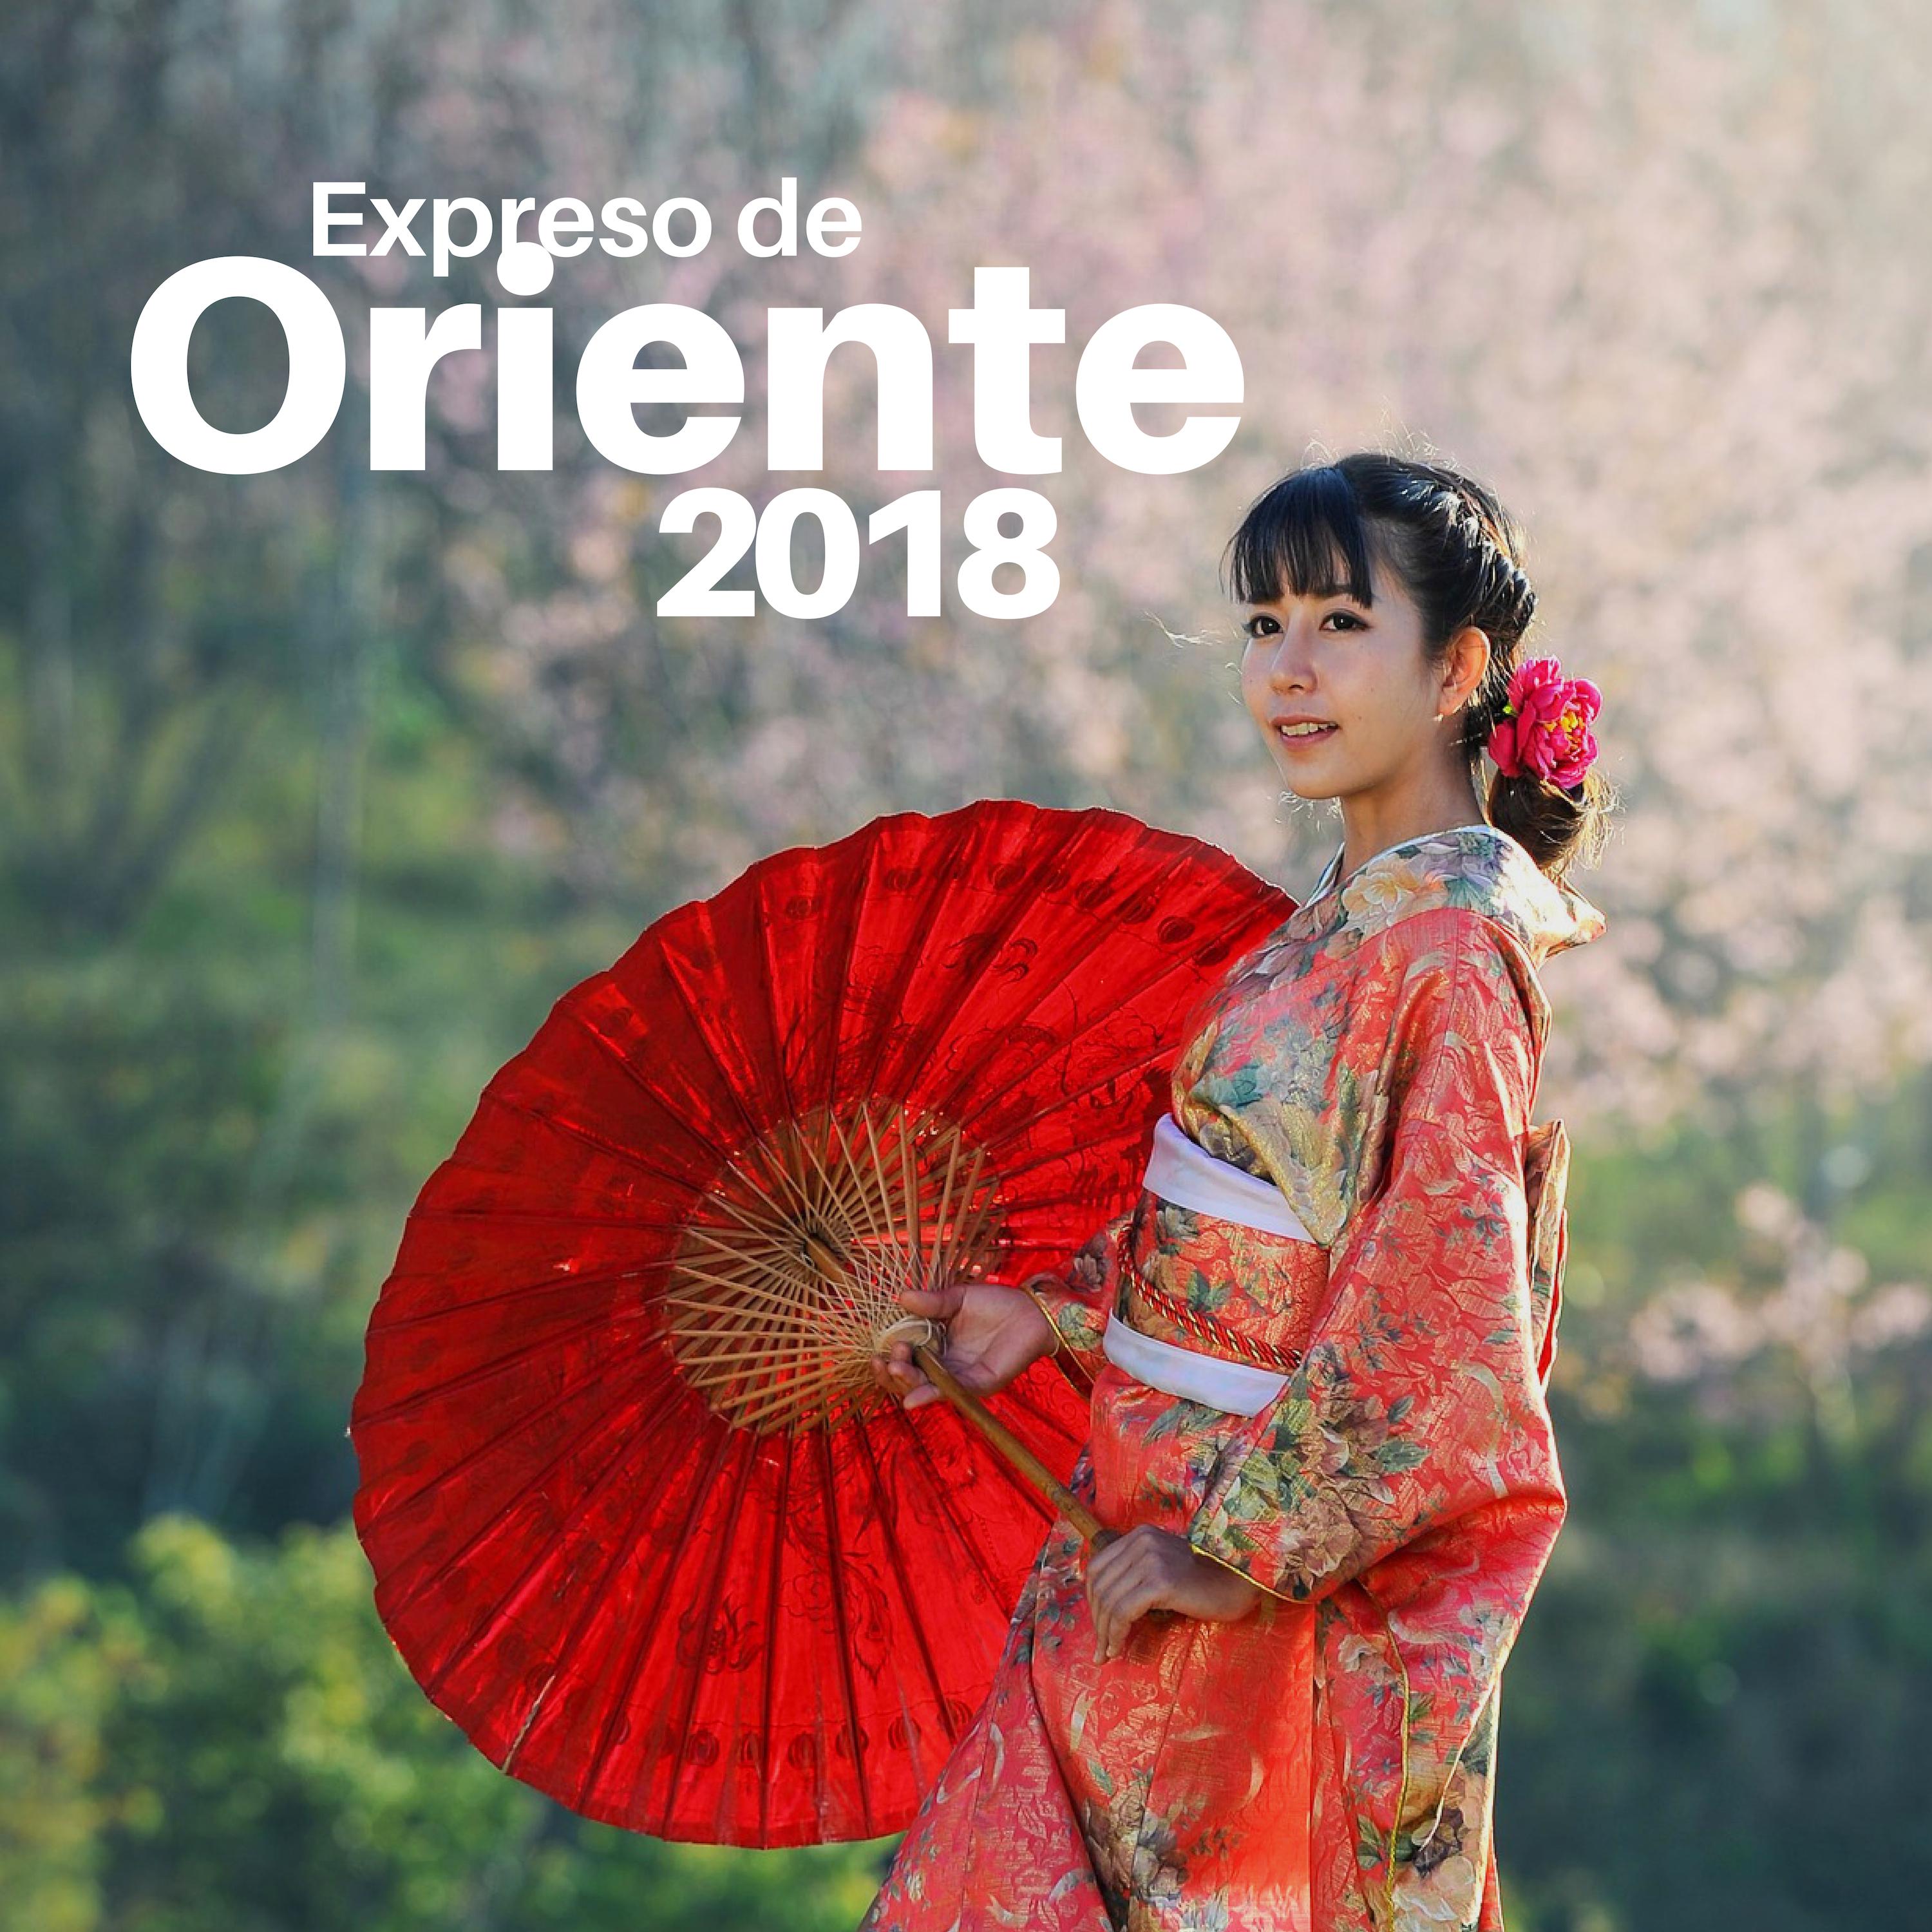 Expreso de Oriente 2018 - Música Asiática, China, Japonesa, Hindú